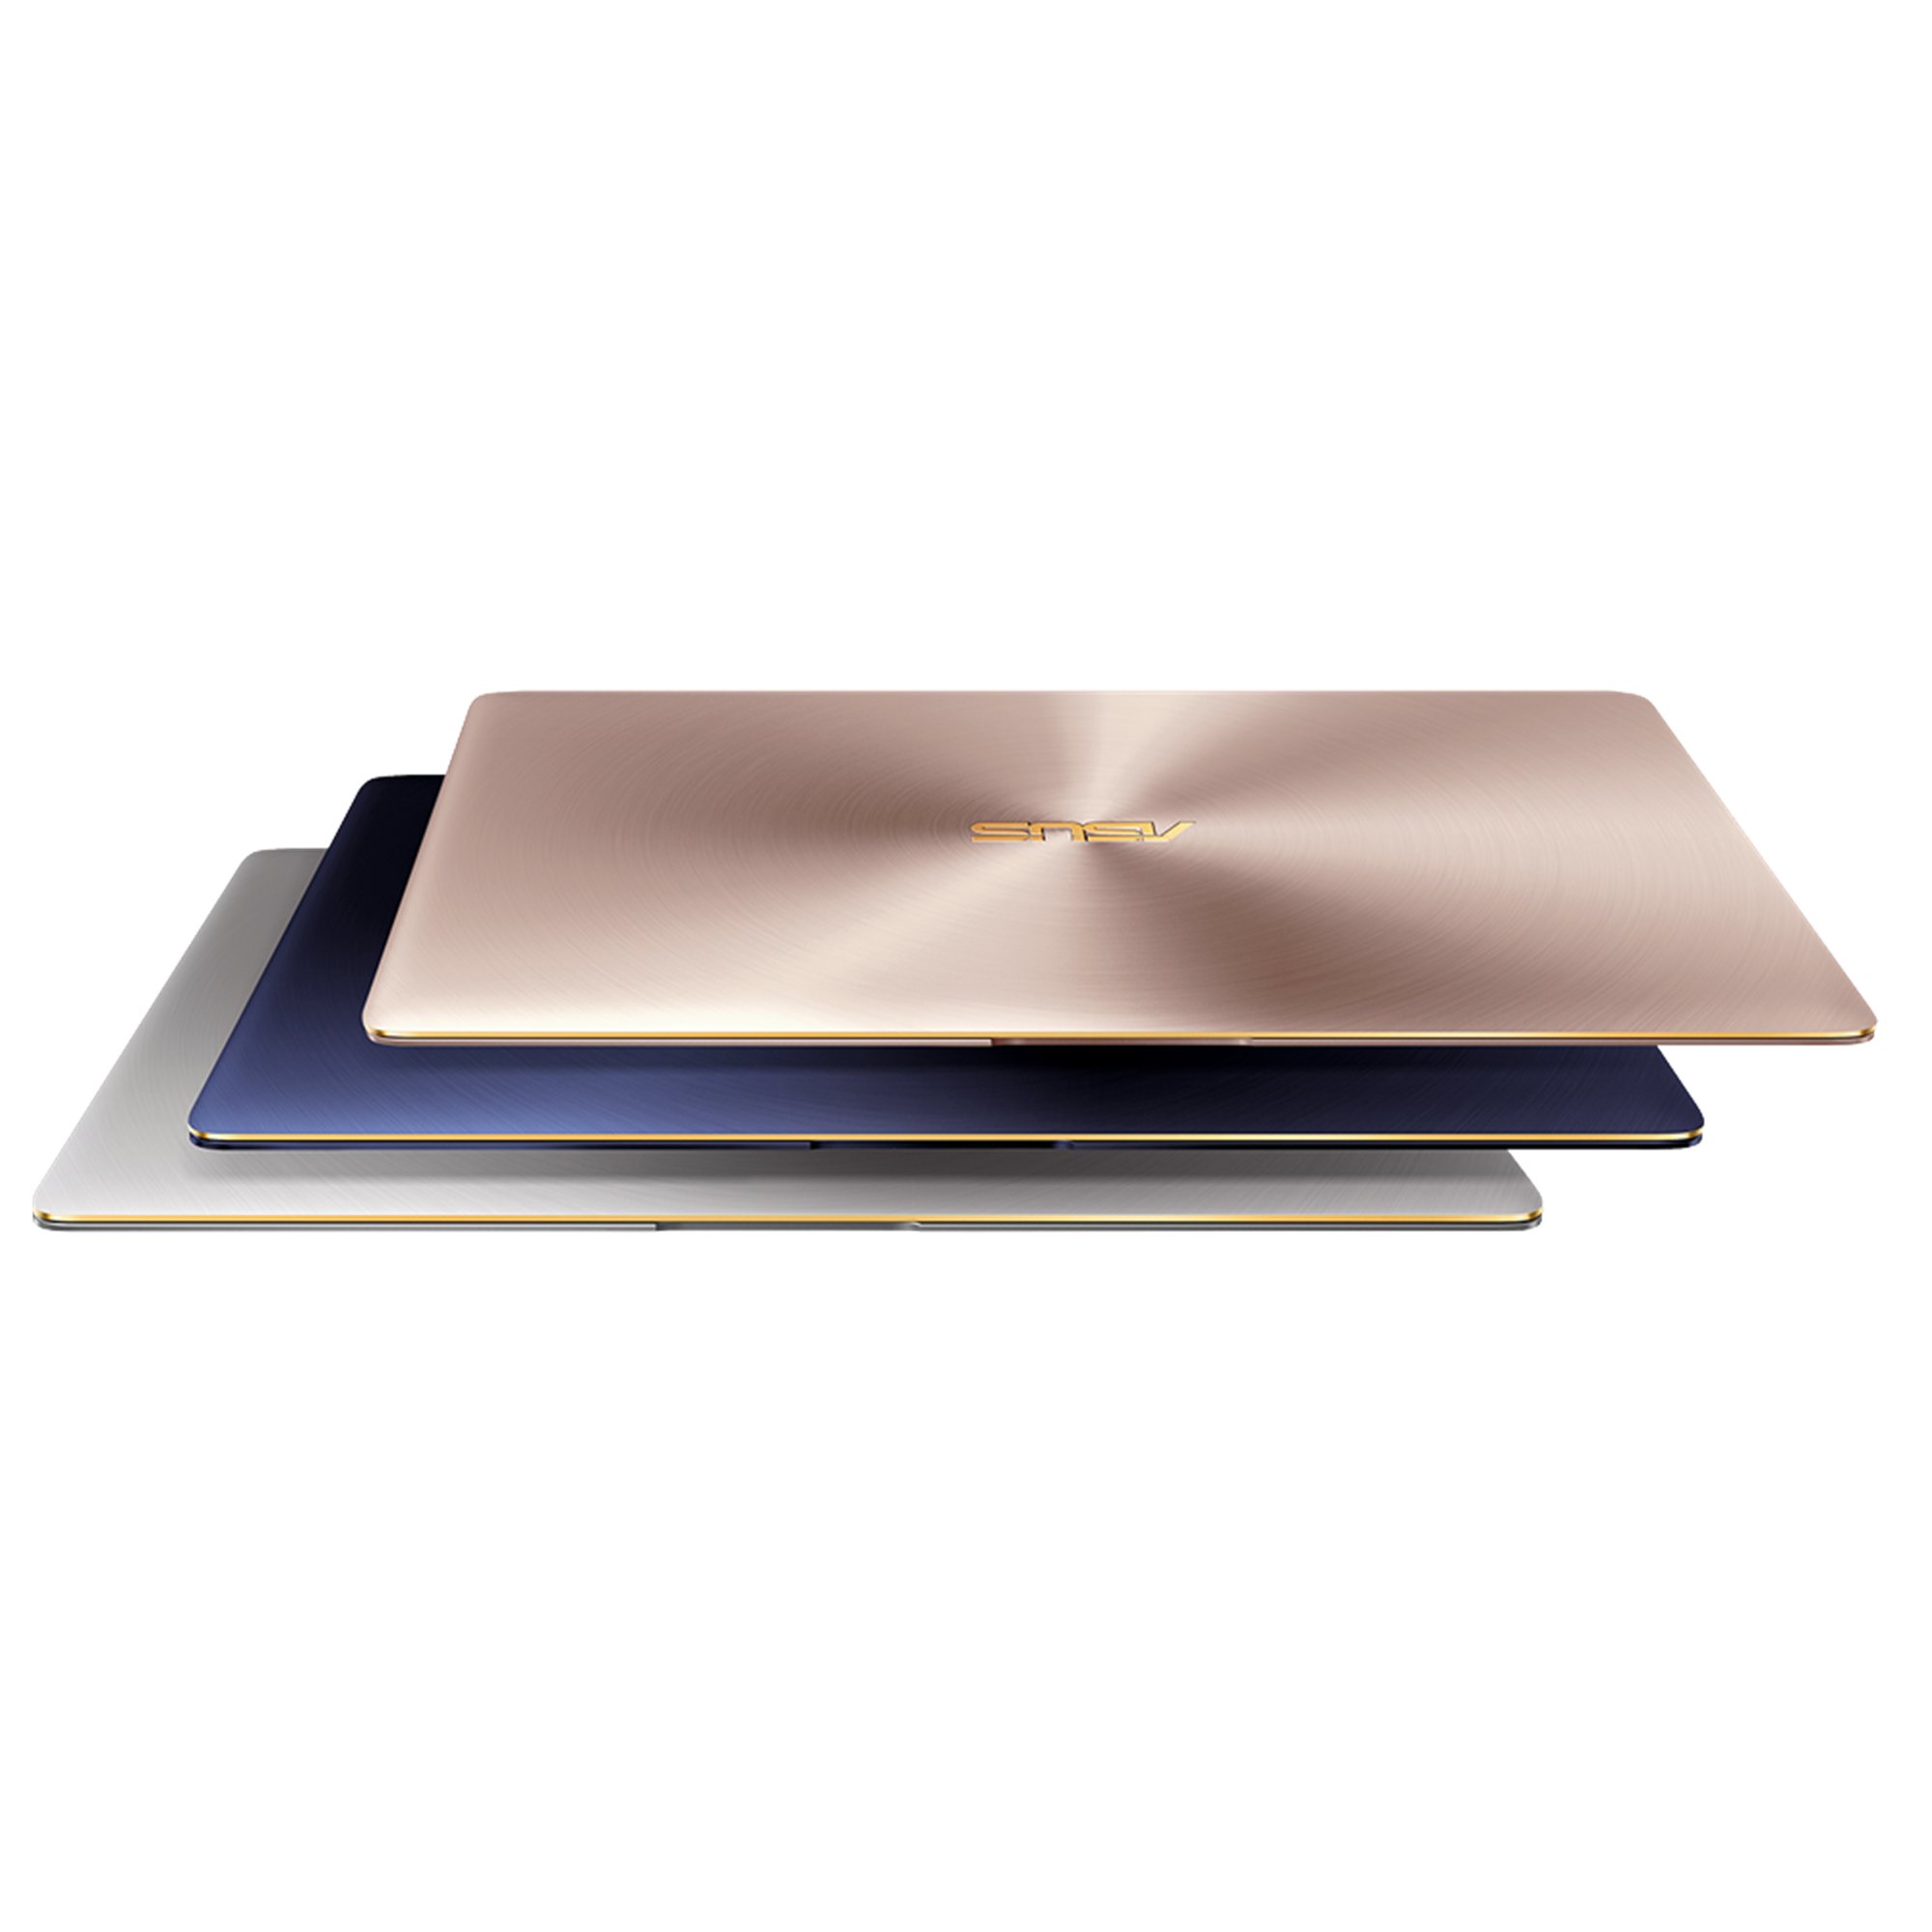 Zenbook 3 UX390｜Laptops Voor thuis｜ASUS België